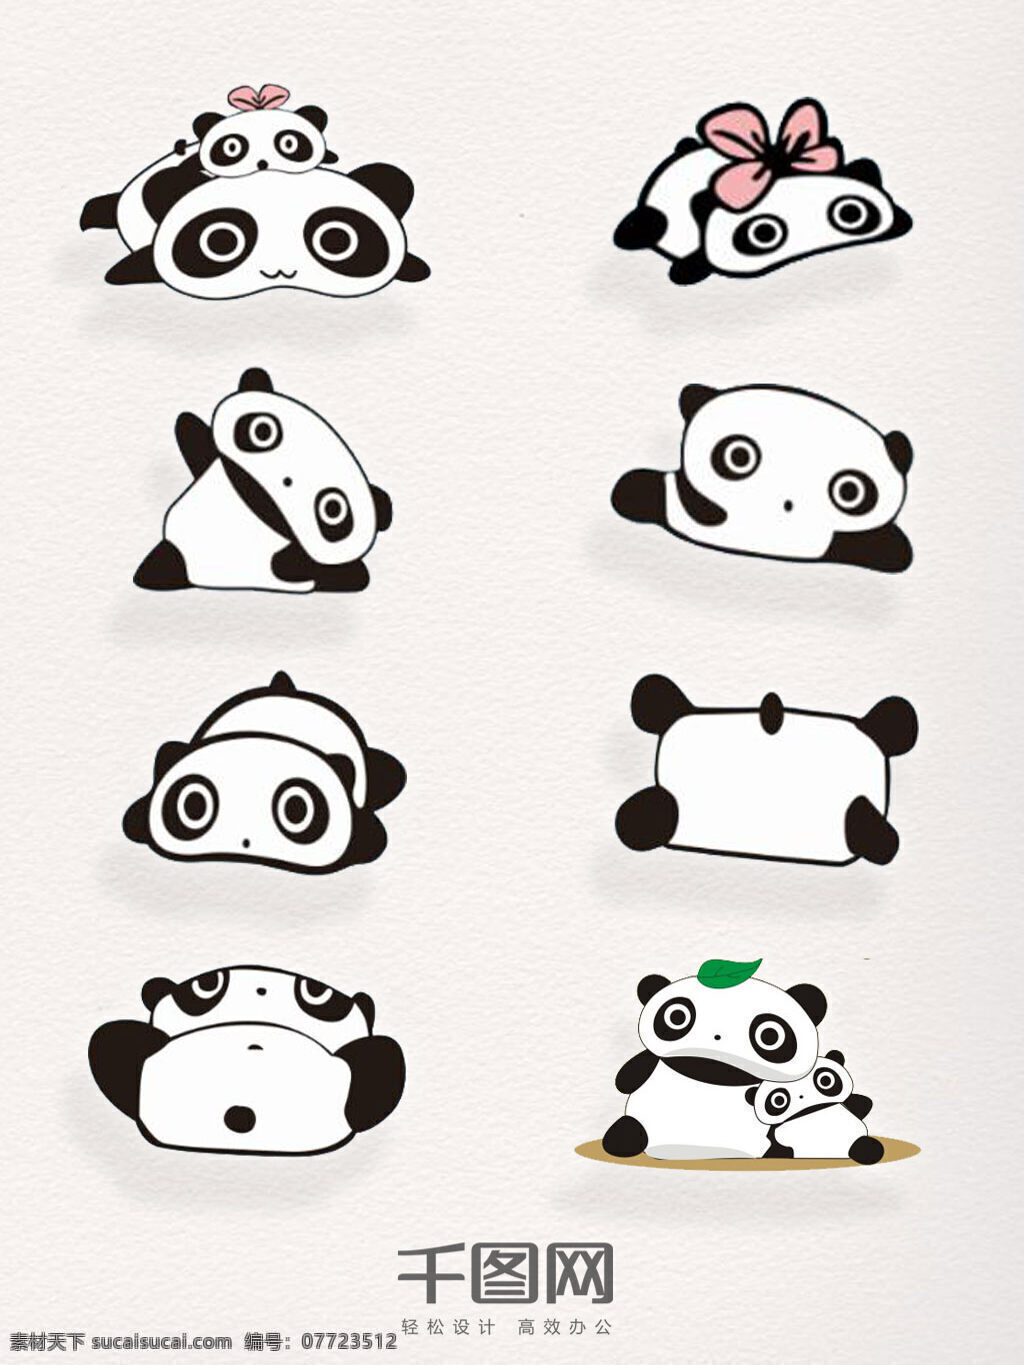 卡通 熊猫 元素 矢量 装饰 图案 集合 矢量熊猫 卡通熊猫 熊猫元素 熊猫装饰 熊猫图案 可爱熊猫 趴着的熊猫 黑白 描边